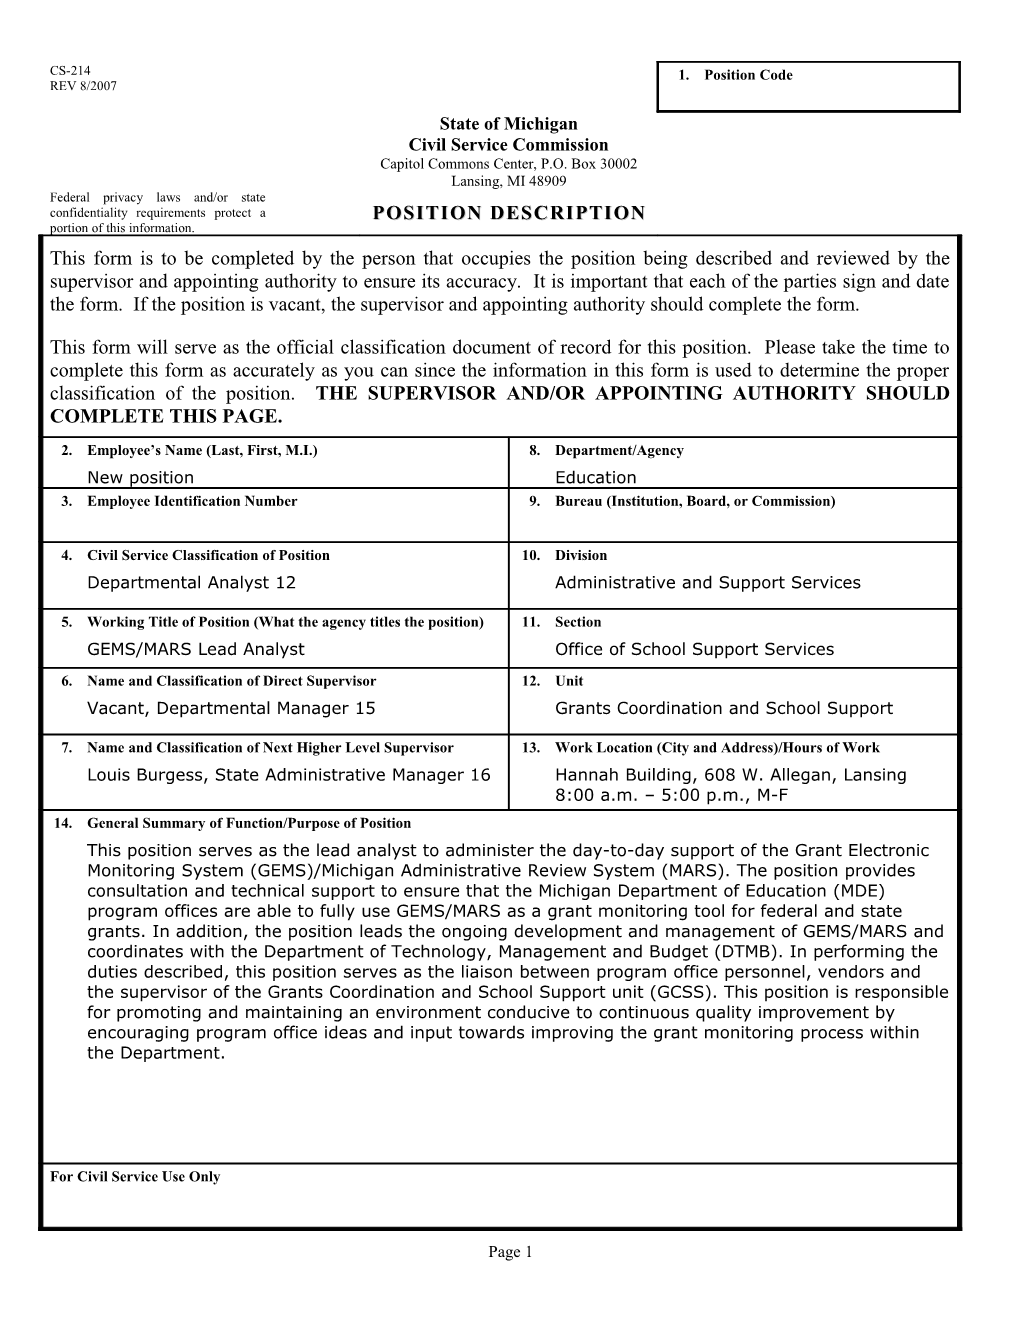 CS-214 Position Description Form s17